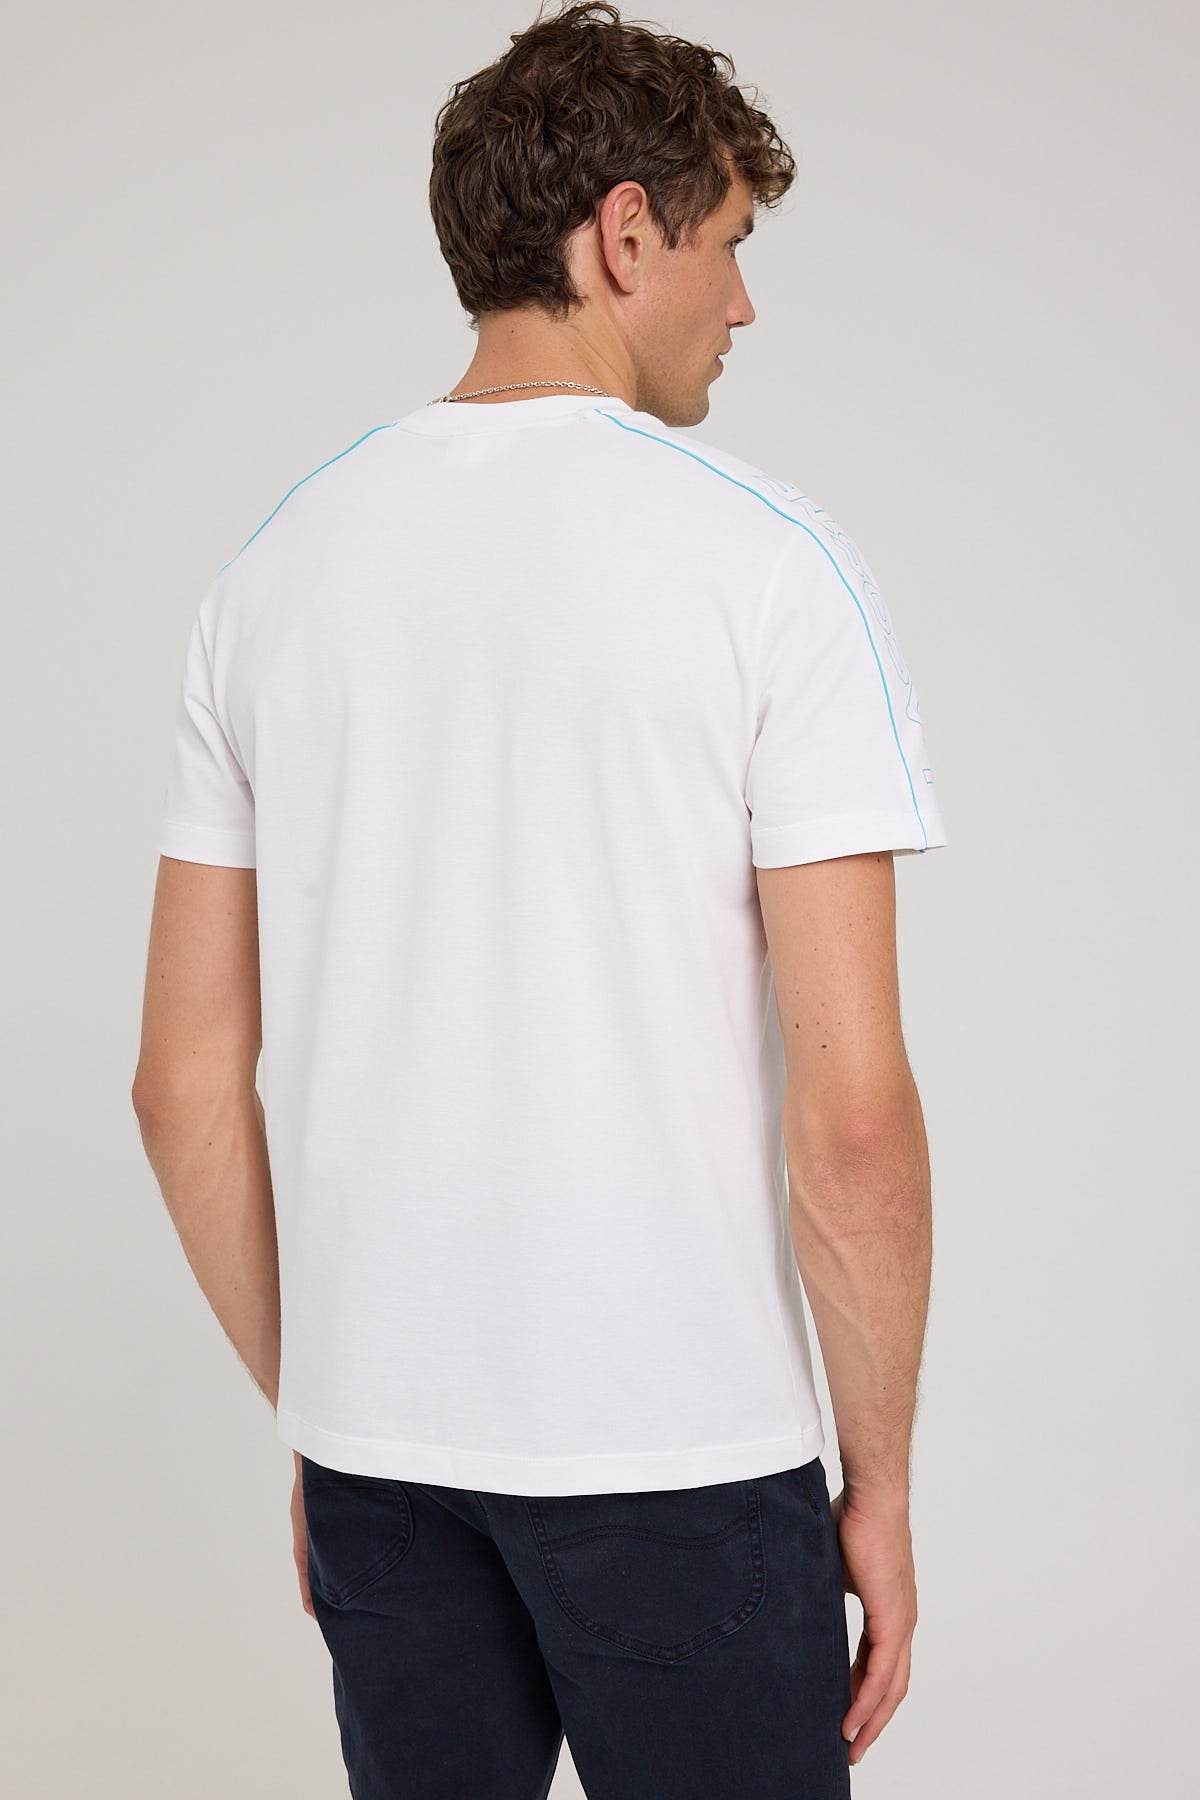 Lacoste Transitional Active Tech Pique T-Shirt White